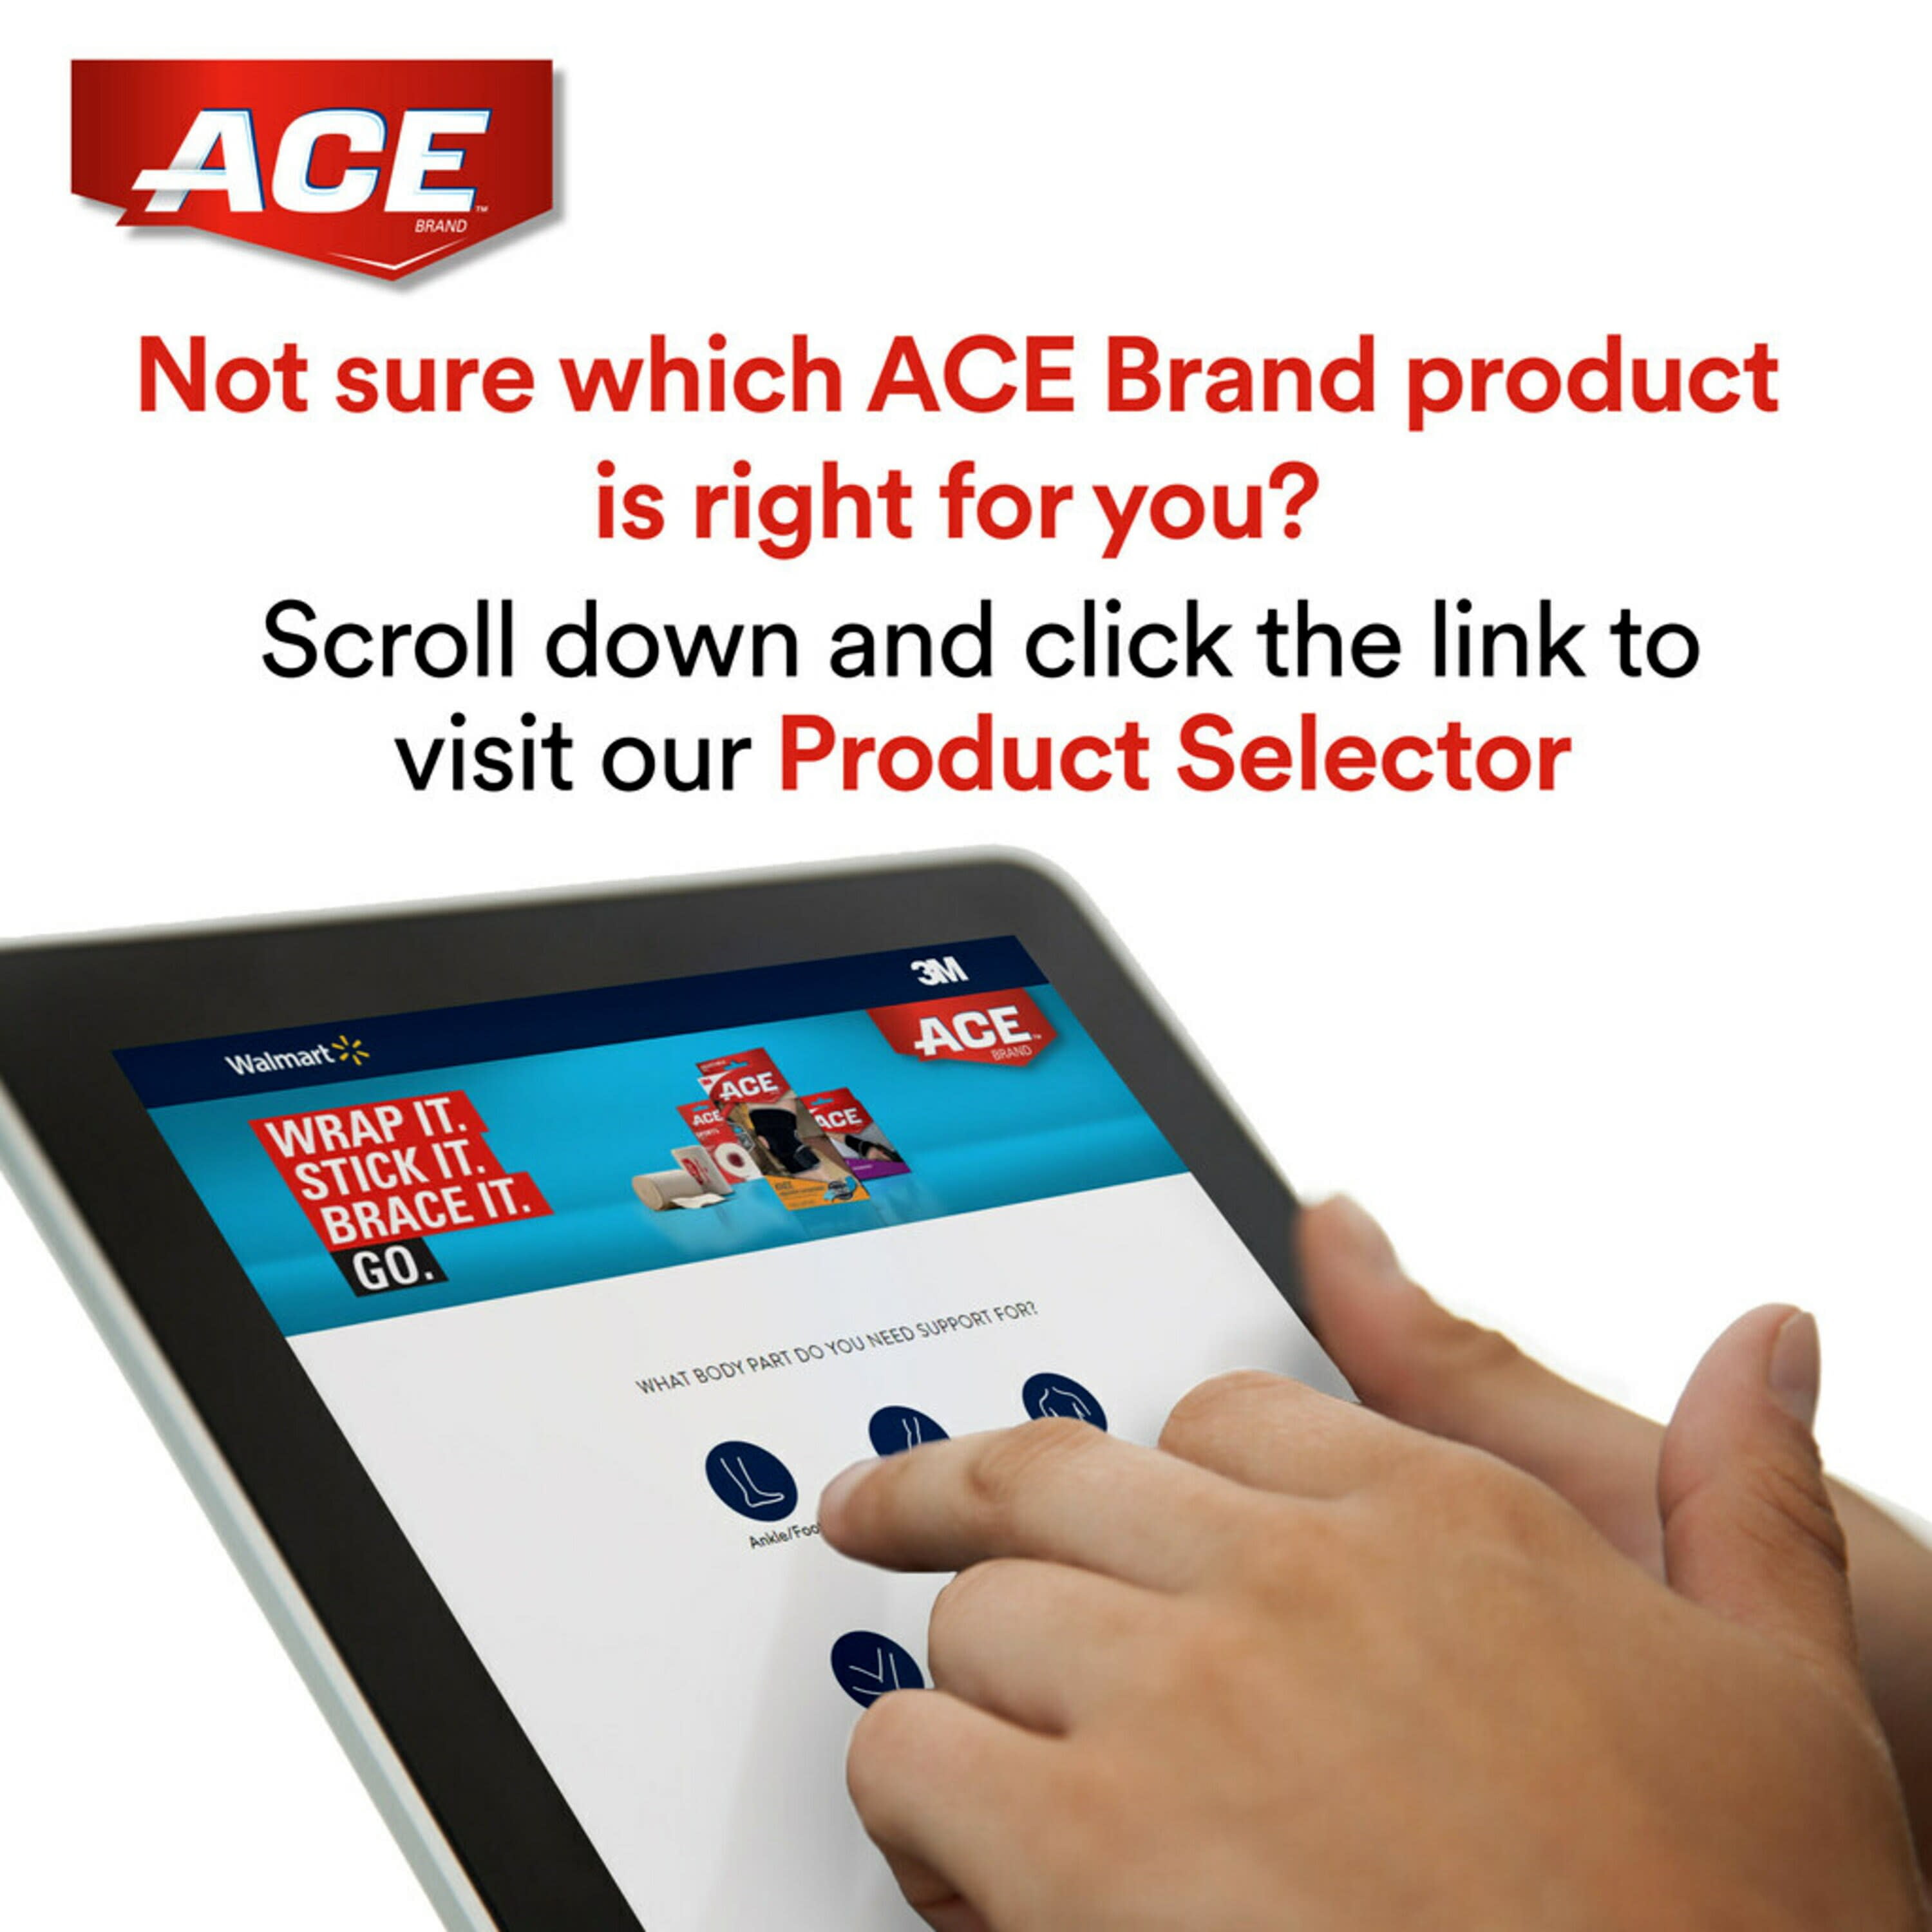 ACE™ Brand Adjustable Back Brace